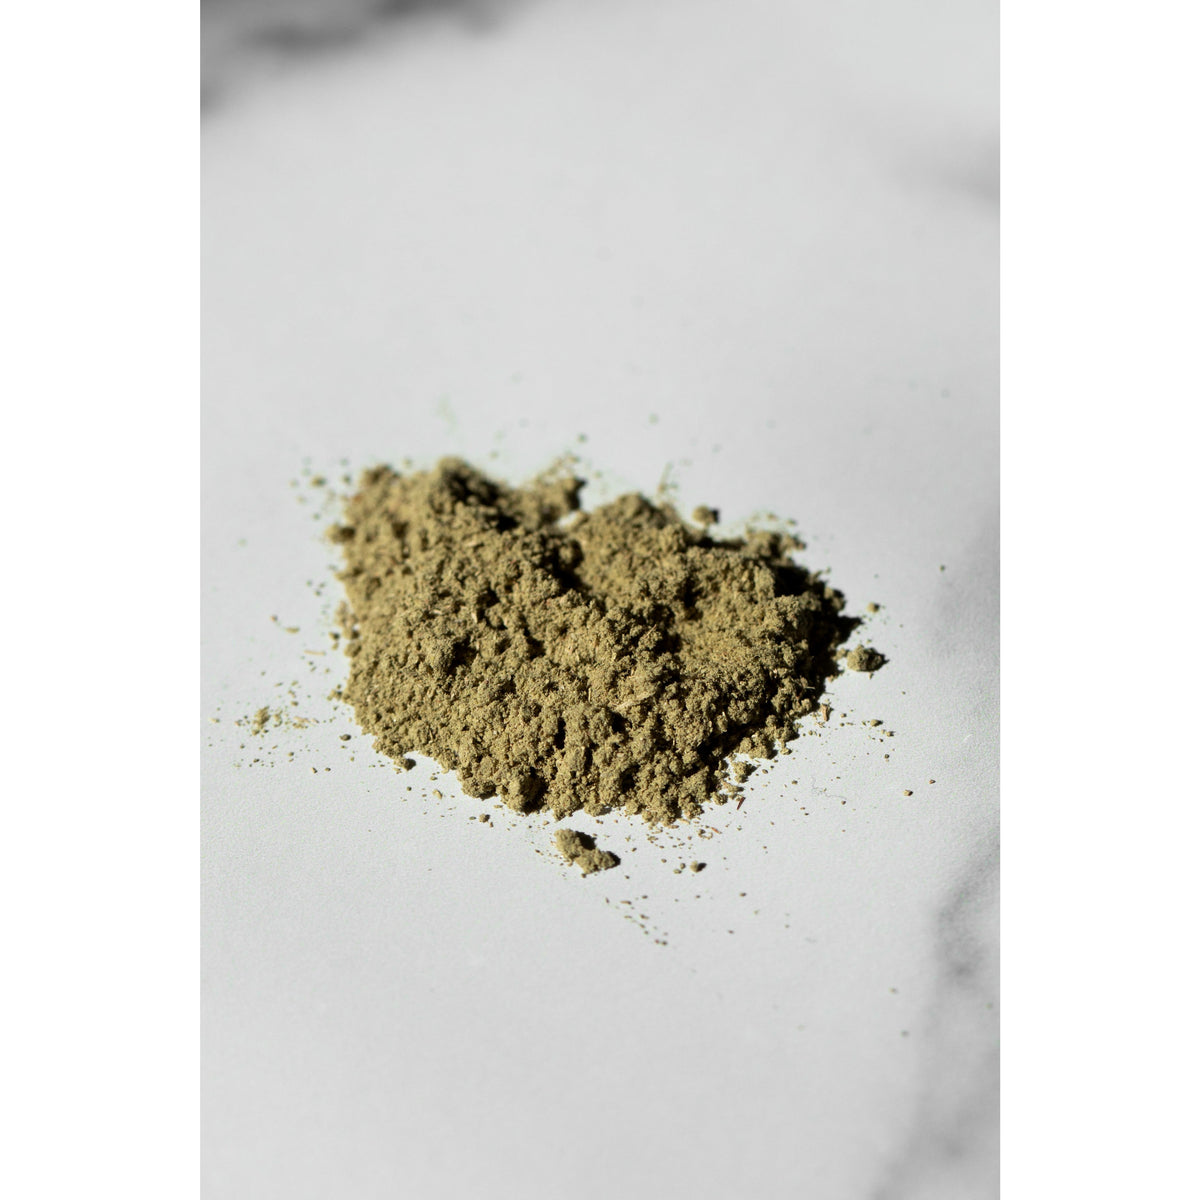 100% Natural Herb Extract Qasil Powder Natural 100% Pure Bulk Cosmetic  Materials Qasil Powder - China Qasil Powder Natural, Qasil